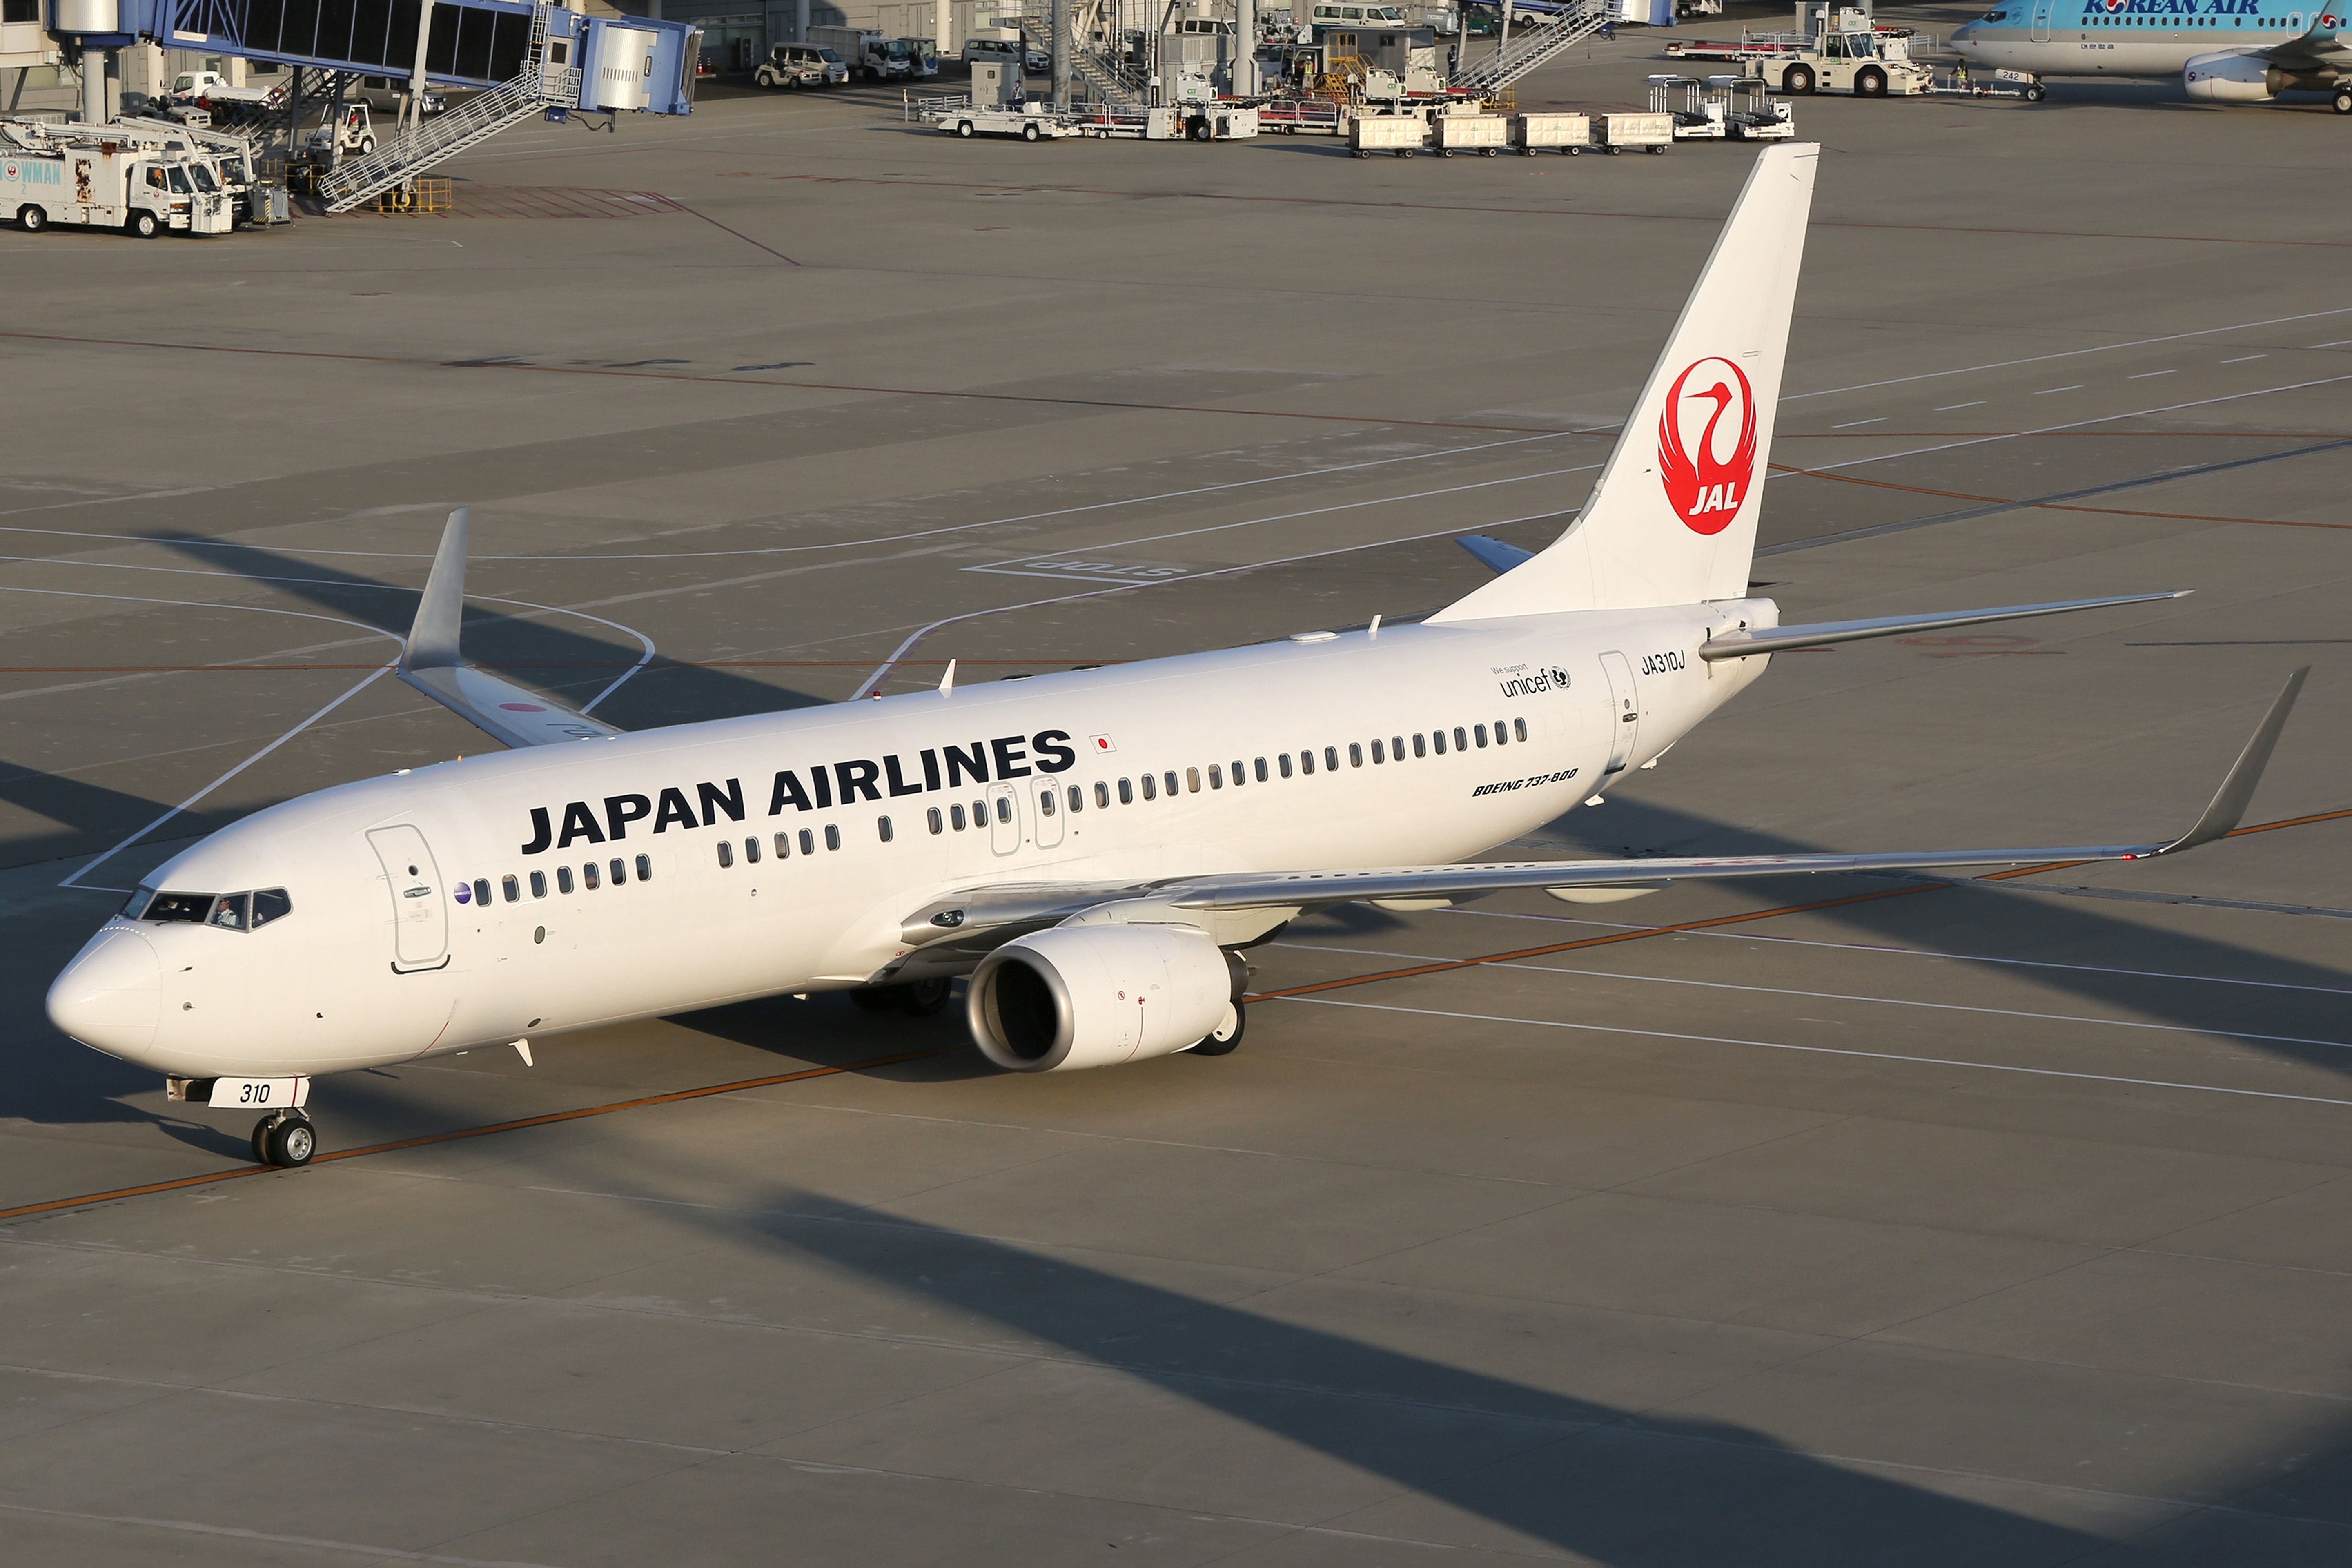 Japan Airlines Boeing 737-800 Taxiing In Nagoya